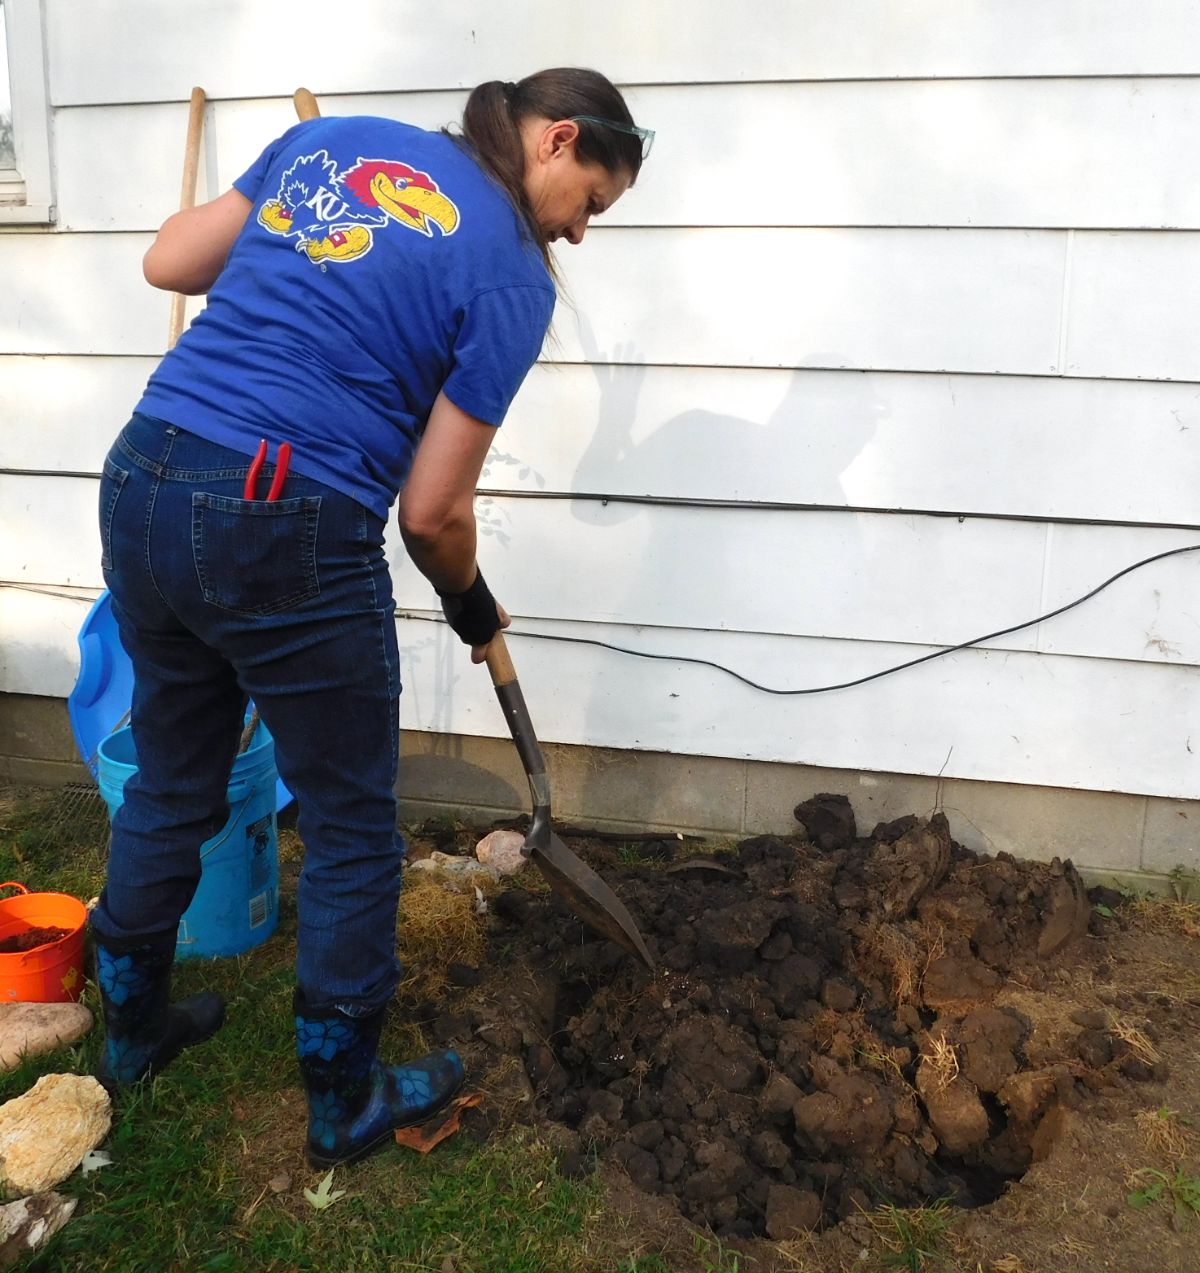 Digging in garden soil